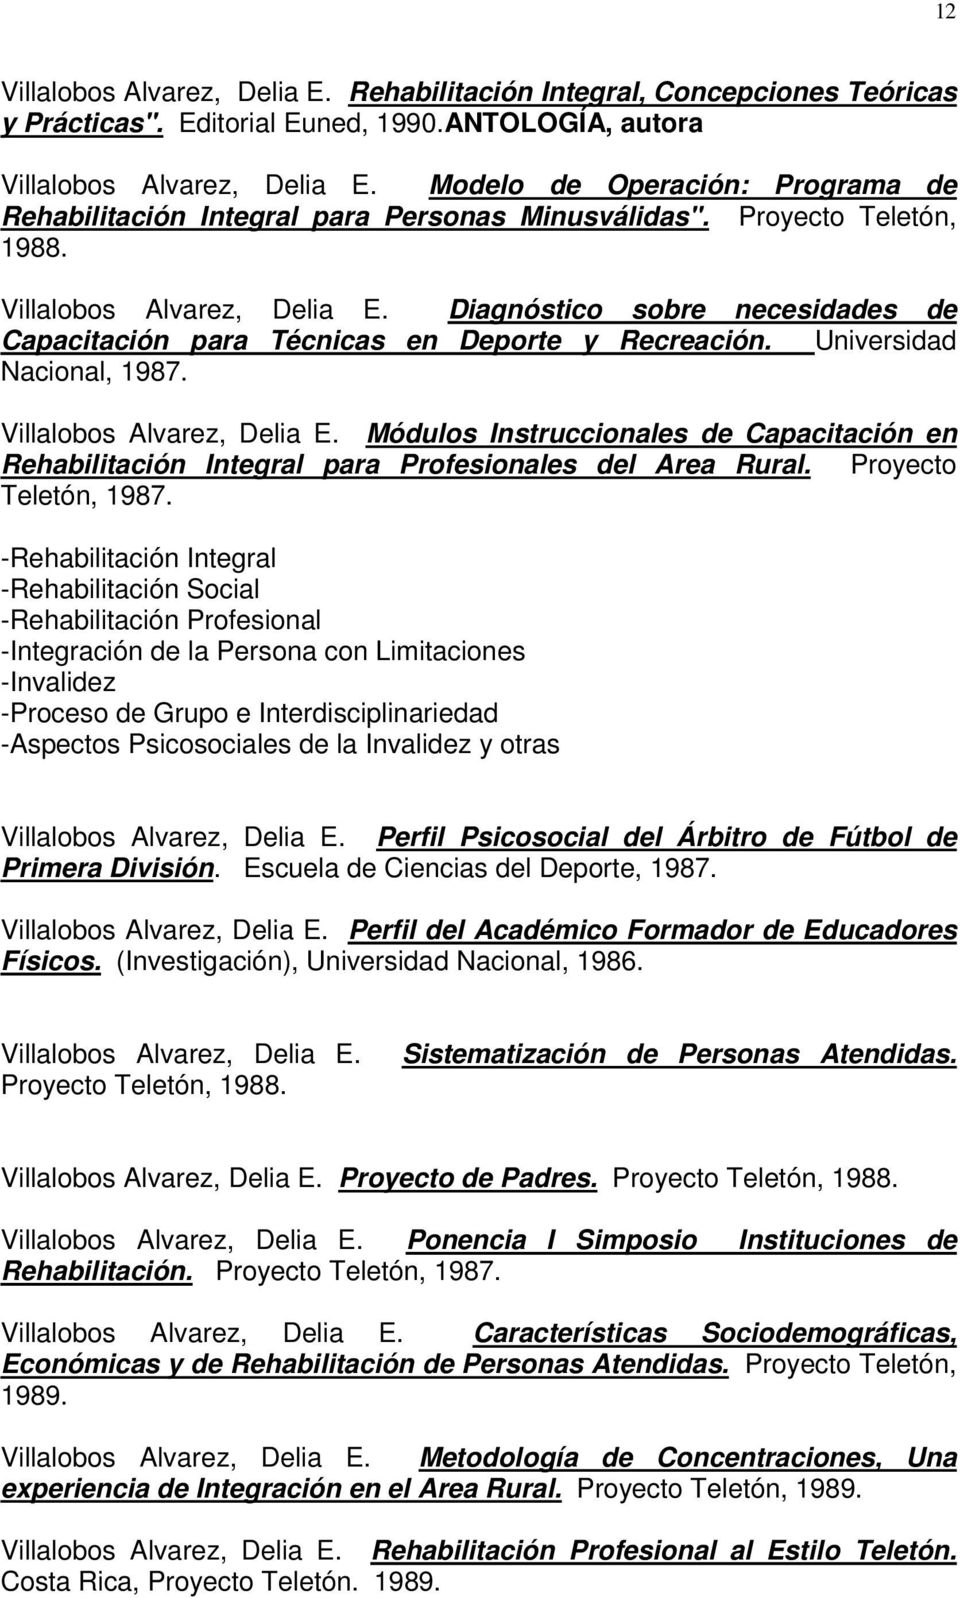 Diagnóstico sobre necesidades de Capacitación para Técnicas en Deporte y Recreación. Universidad Nacional, 1987. Villalobos Alvarez, Delia E.